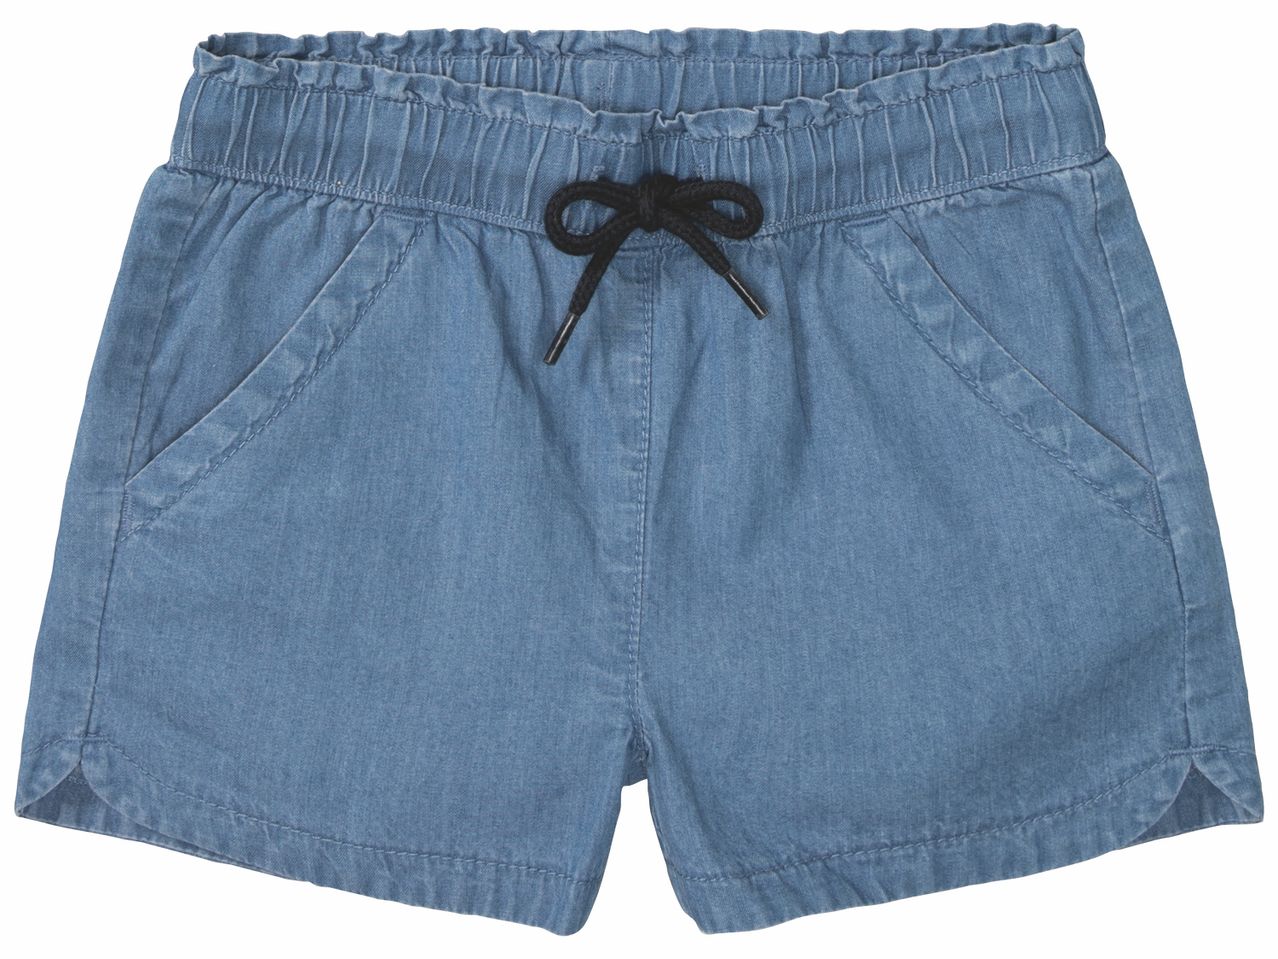 Shorts fille , prezzo 6.99 EUR 
Shorts fille 
- Du 2/4 ans au 6/8 ans selon modèle.
- ...